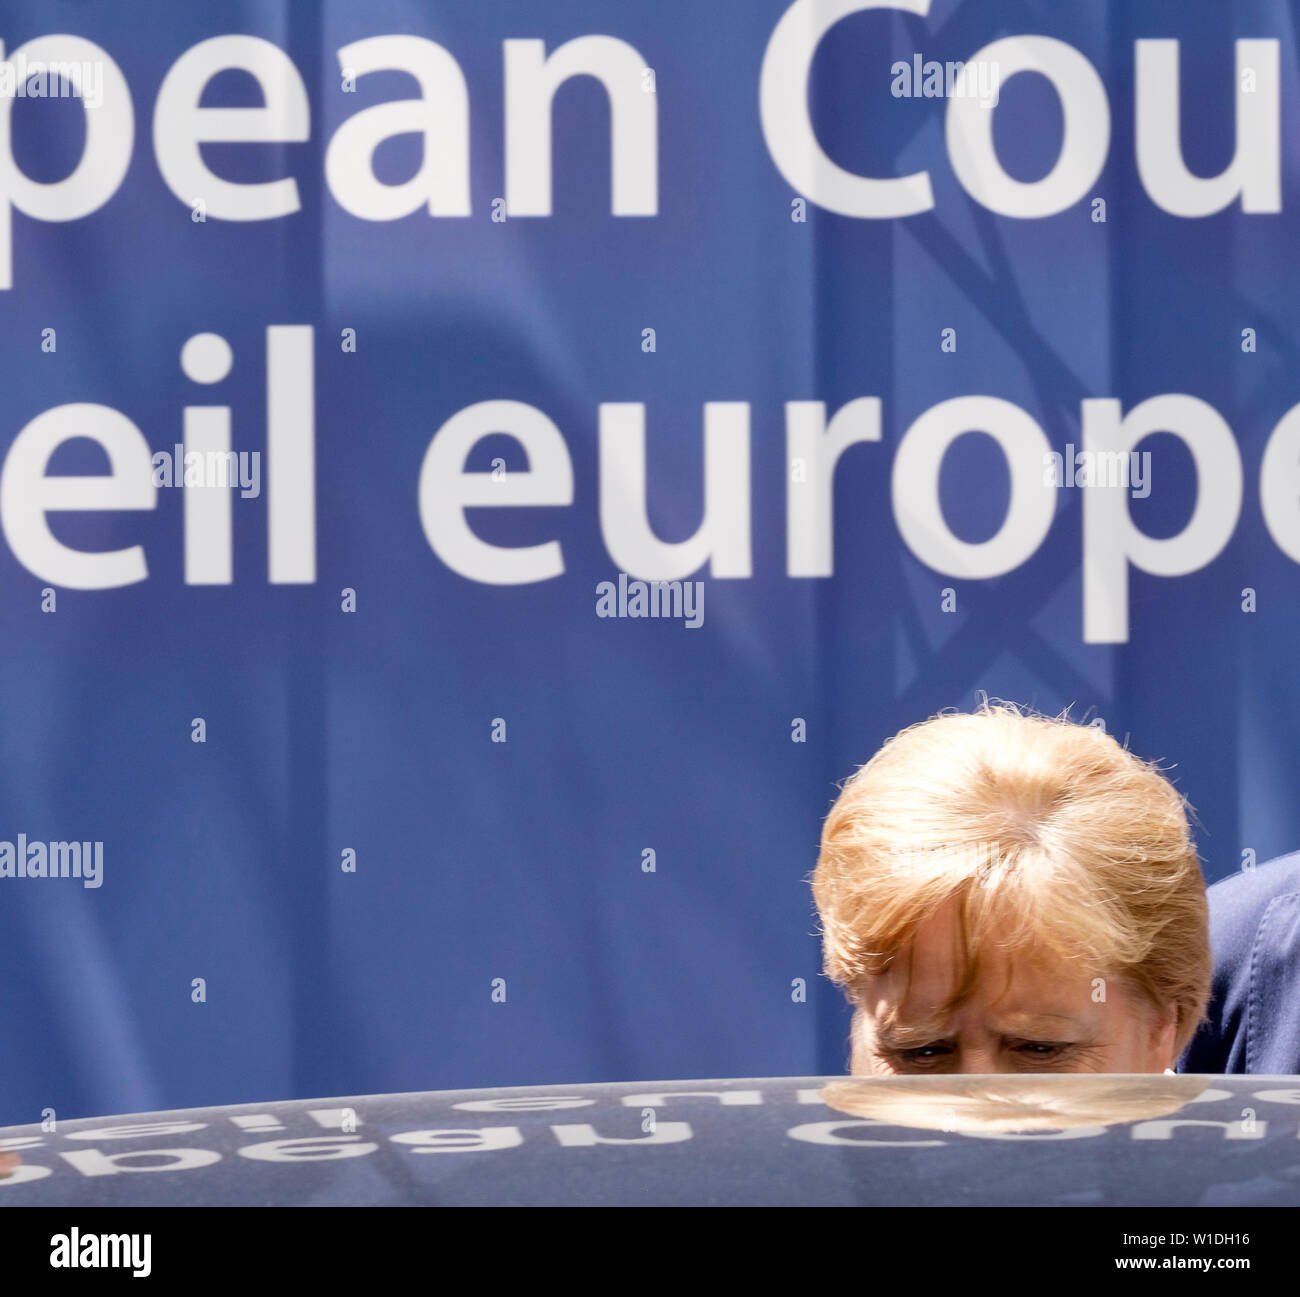 01 Juli 2019, Belgien, Brüssel: Angela Merkel, Bundeskanzlerin der Bundesrepublik Deutschland, verlässt das Gebäude nach der Vertagung der Beratungen mit ihren EU-Kollegen im Streit um die Europäischen top Büros auf dem EU-Sondergipfel. Foto: Thierry Monasse/dpa Stockfoto